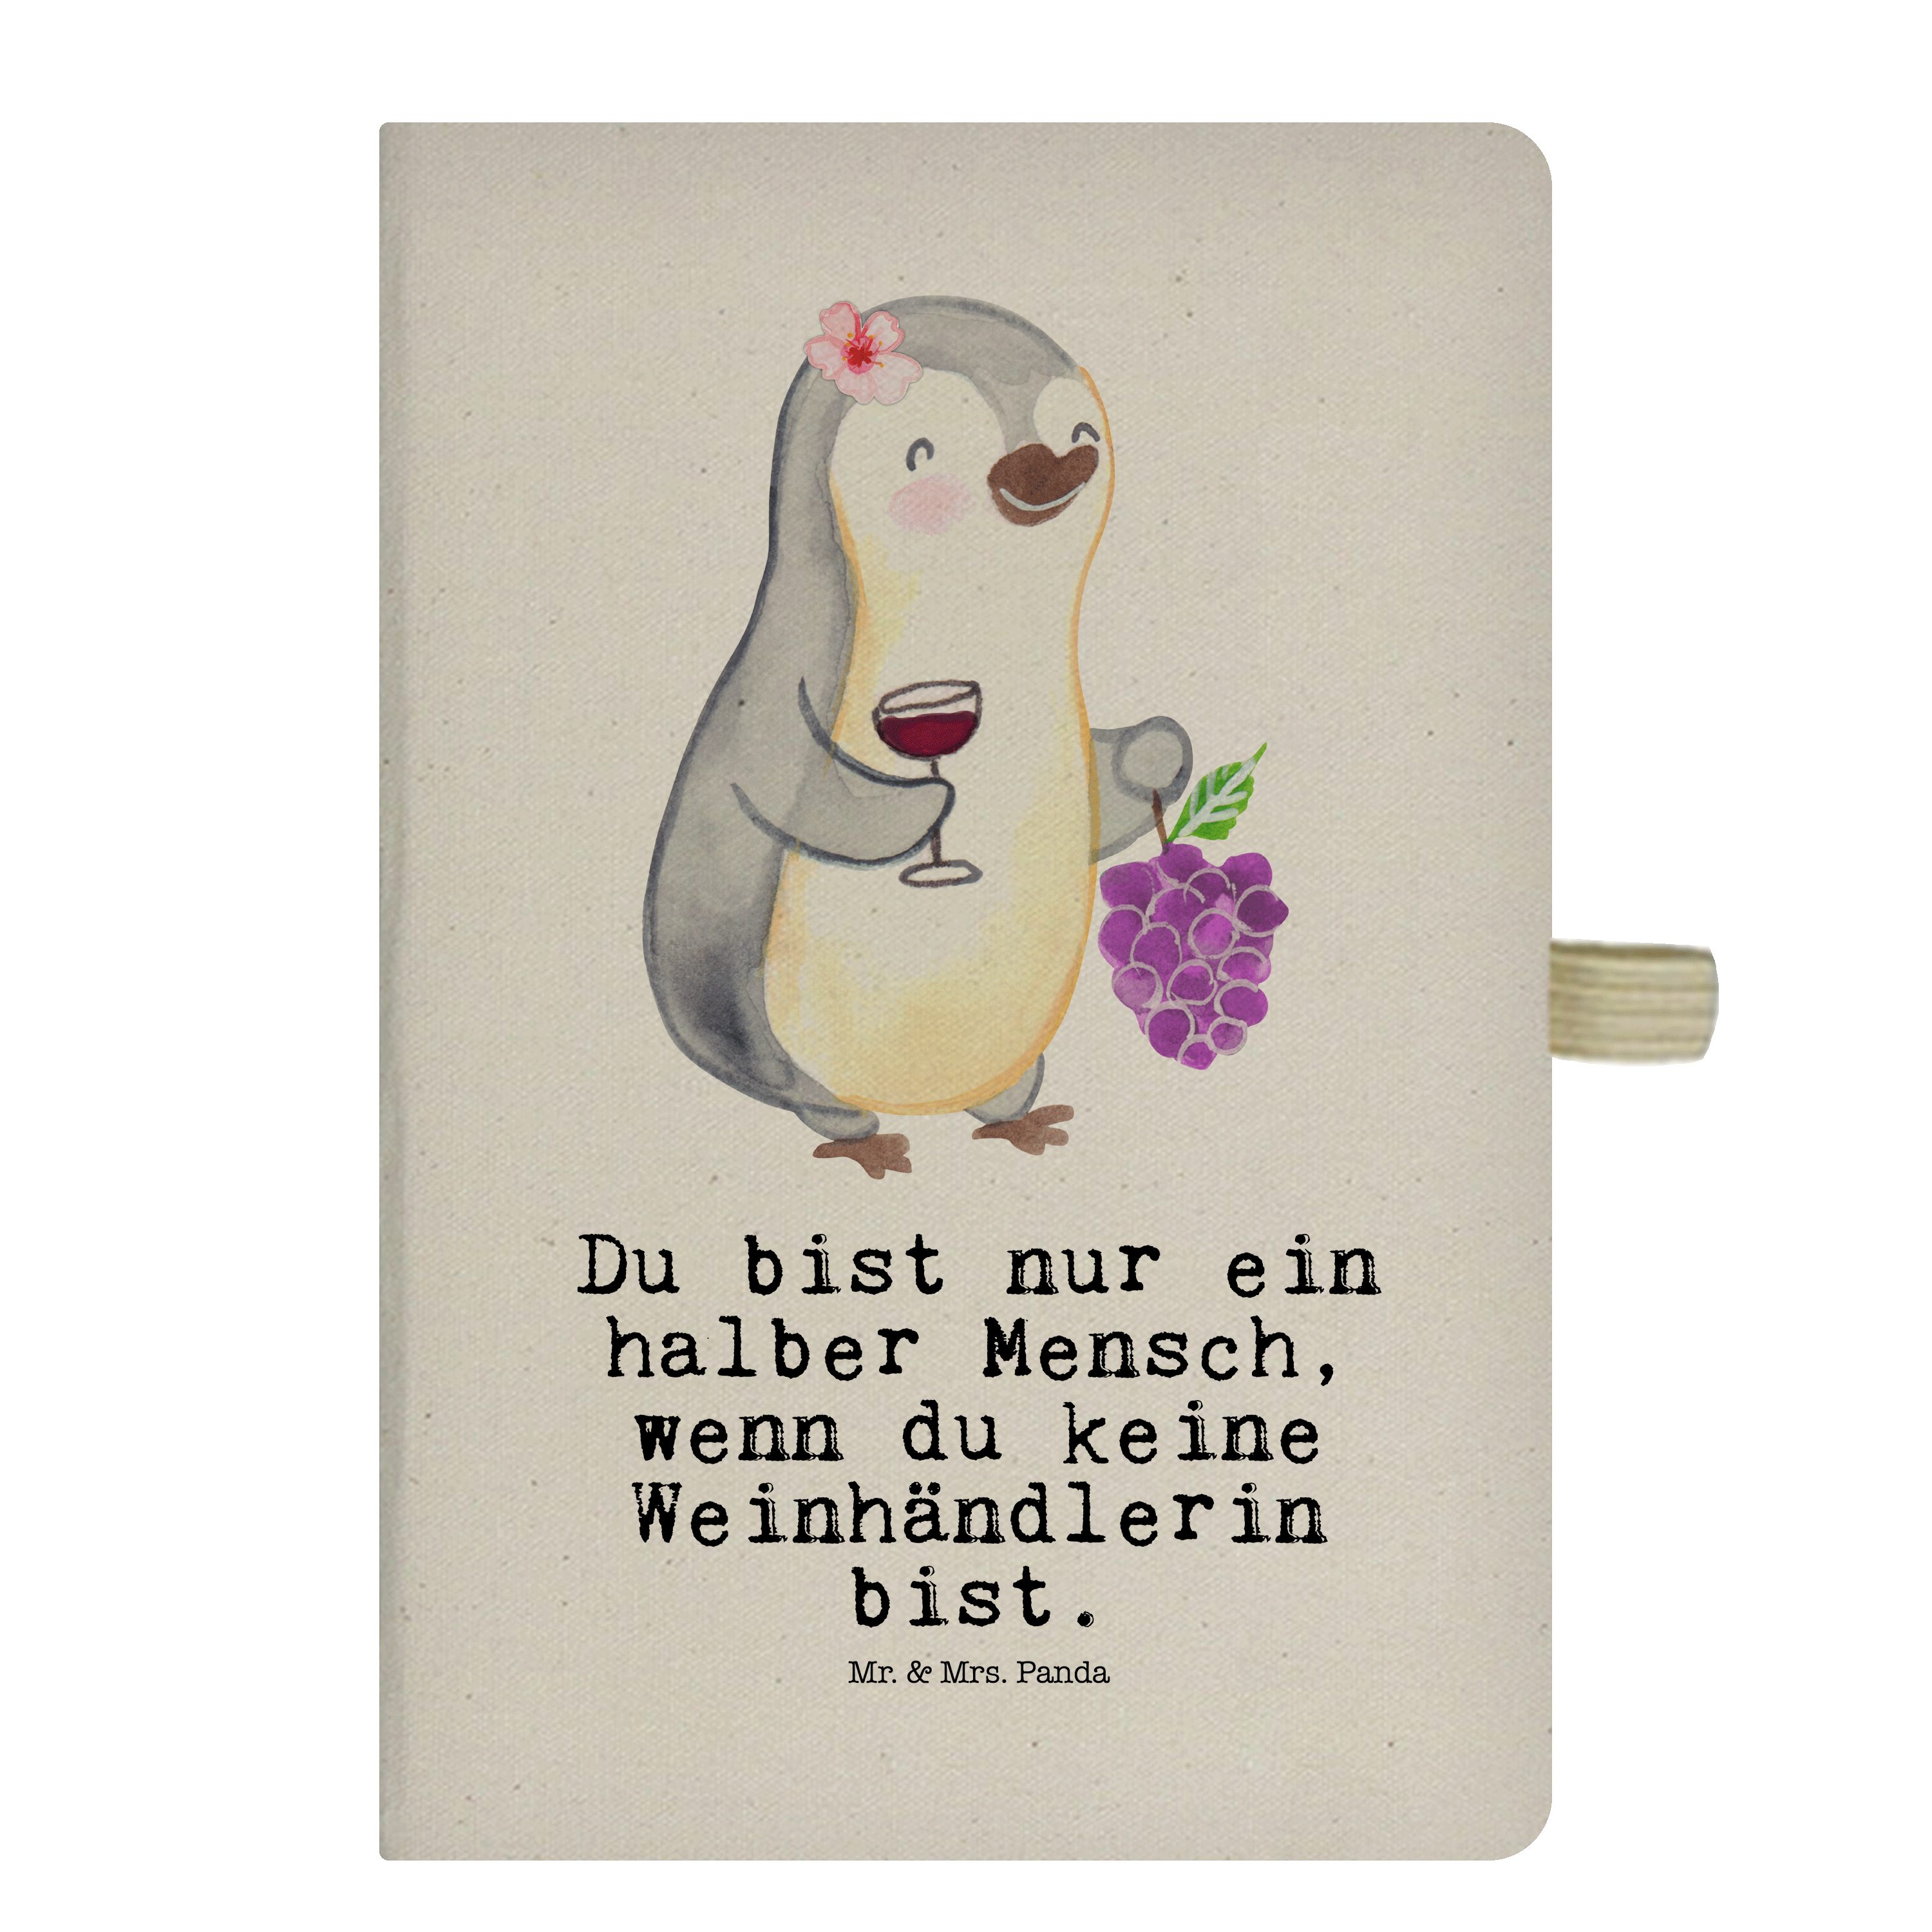 mit Panda Kollege, Geschenk, - Noti Notizbuch Weinhändlerin Panda Mr. Herz & & Mr. - Transparent Mrs. Beruf, Mrs.